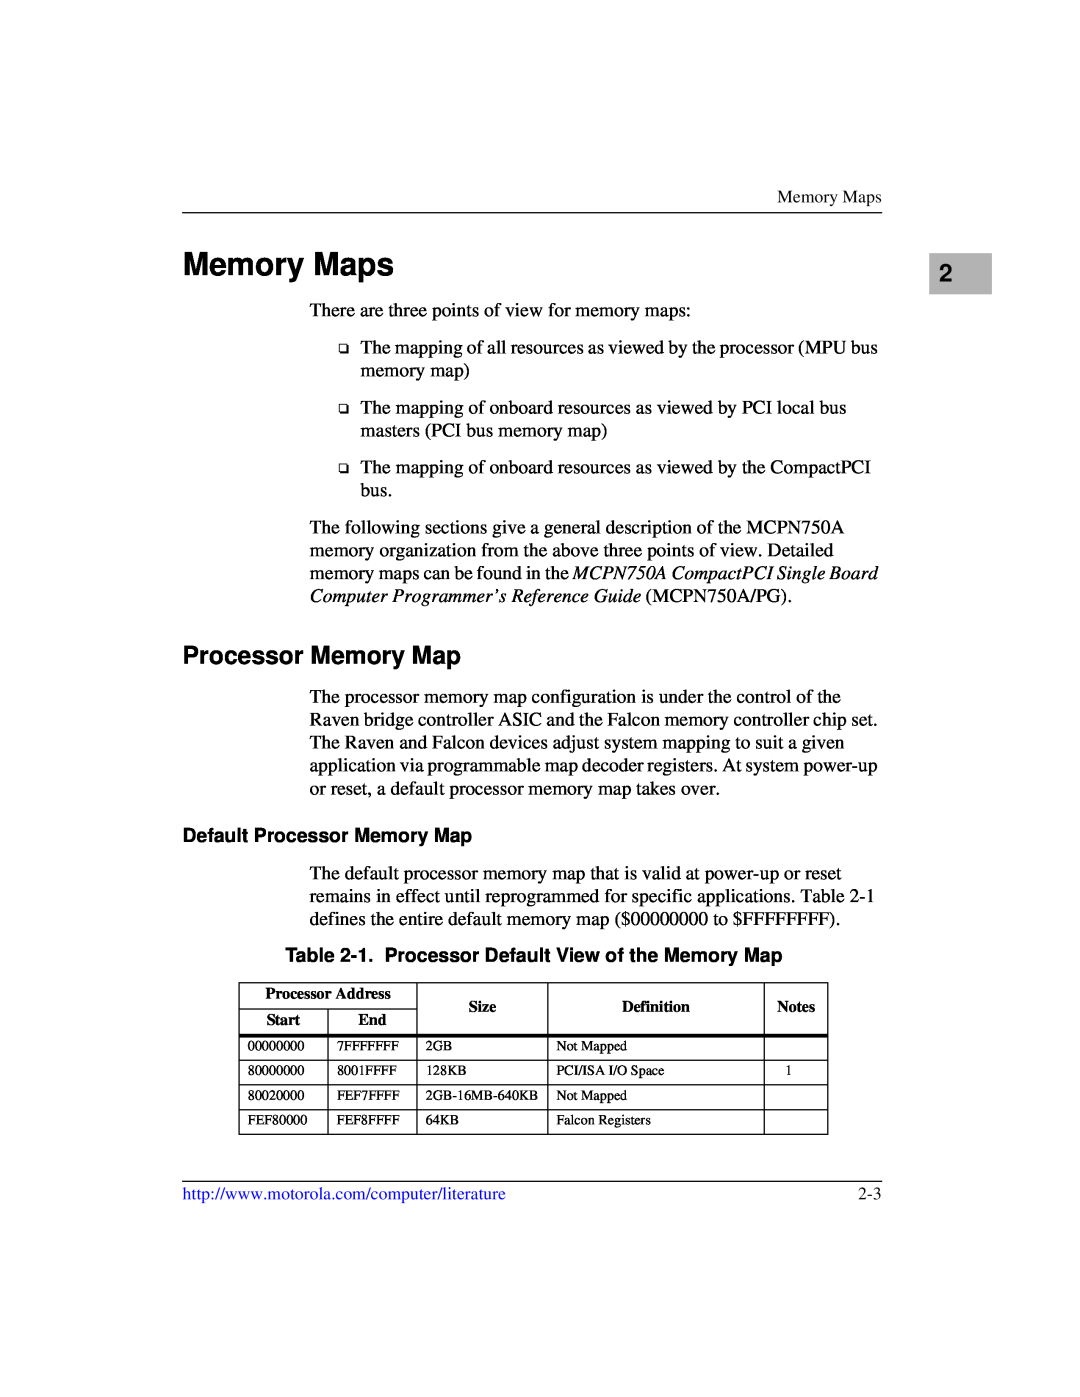 Motorola IH5, MCPN750A manual Memory Maps, Default Processor Memory Map, 1. Processor Default View of the Memory Map 